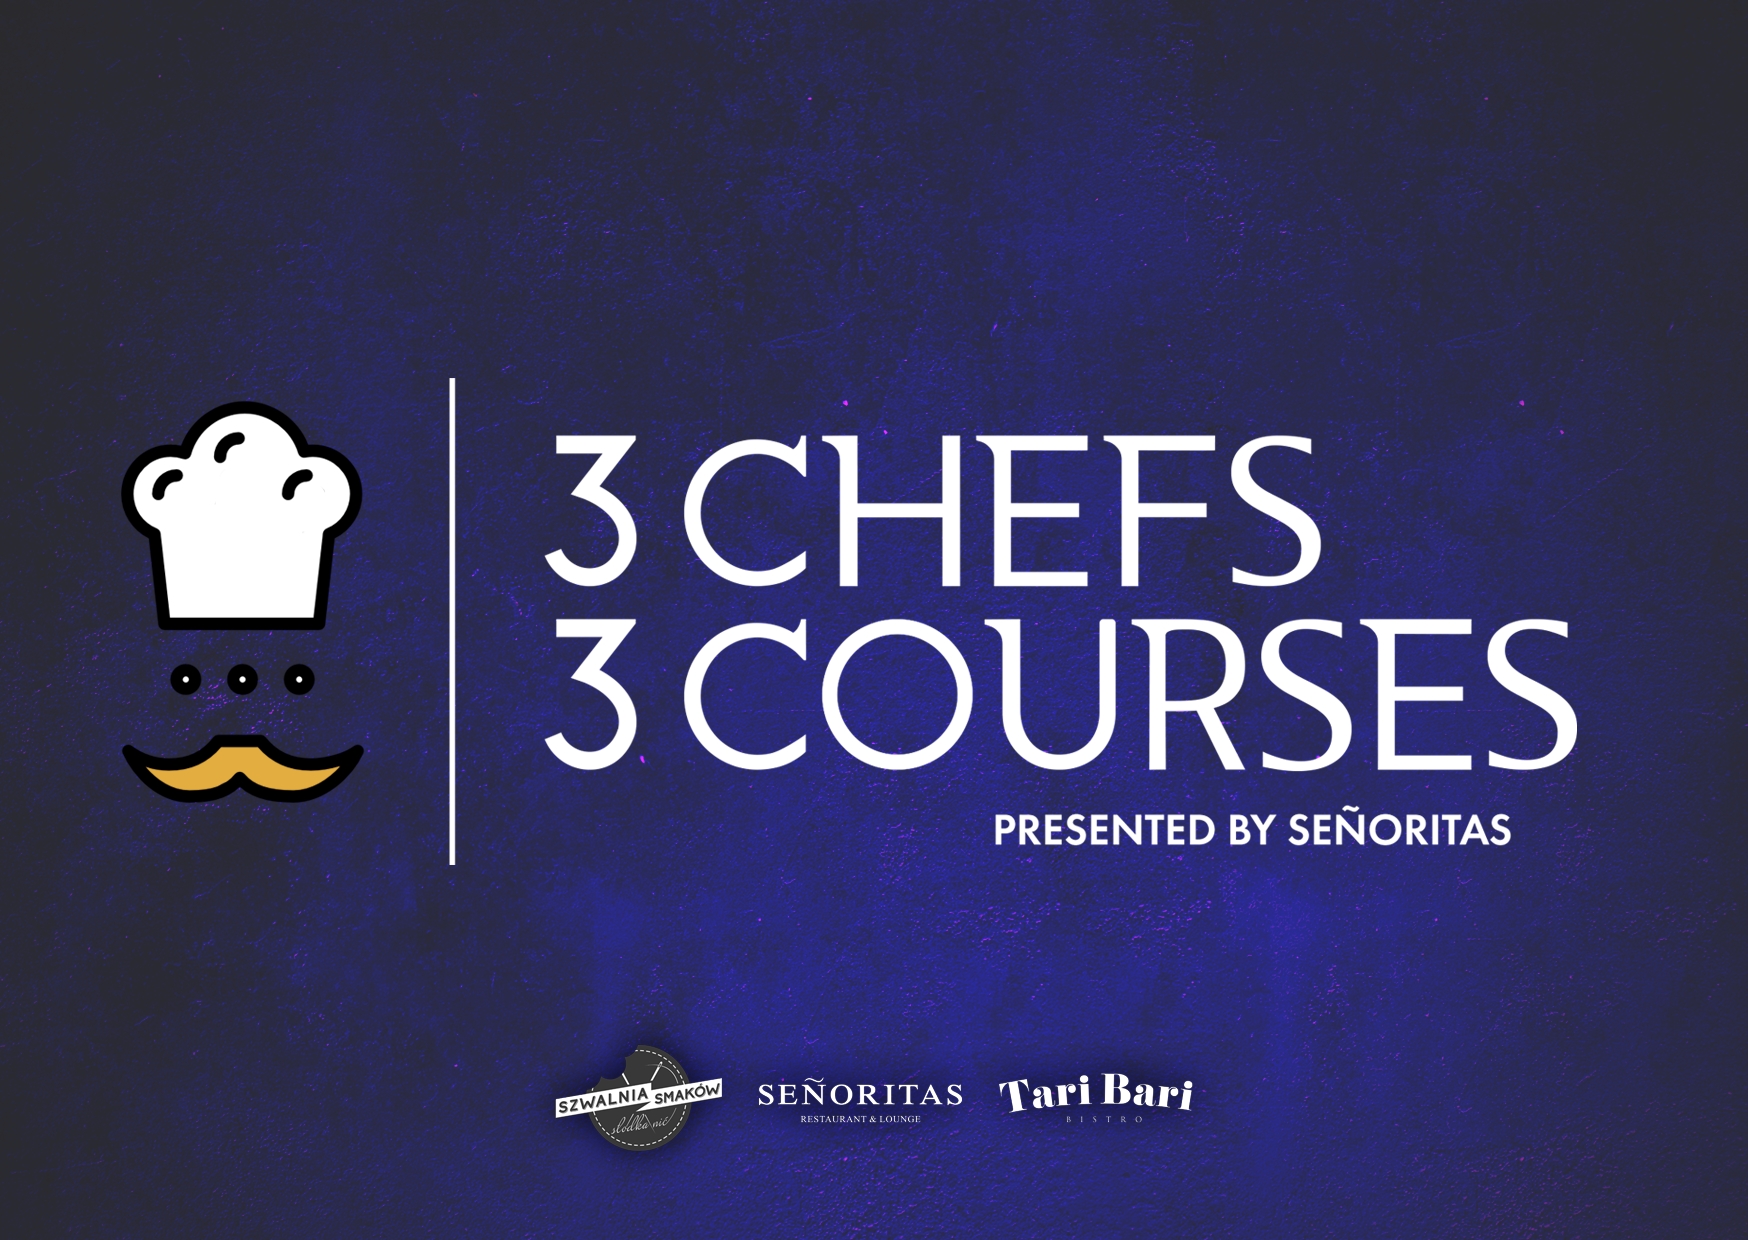 3 Chefs – 3 Courses, czyli kolacja na sześć rąk w Senoritas